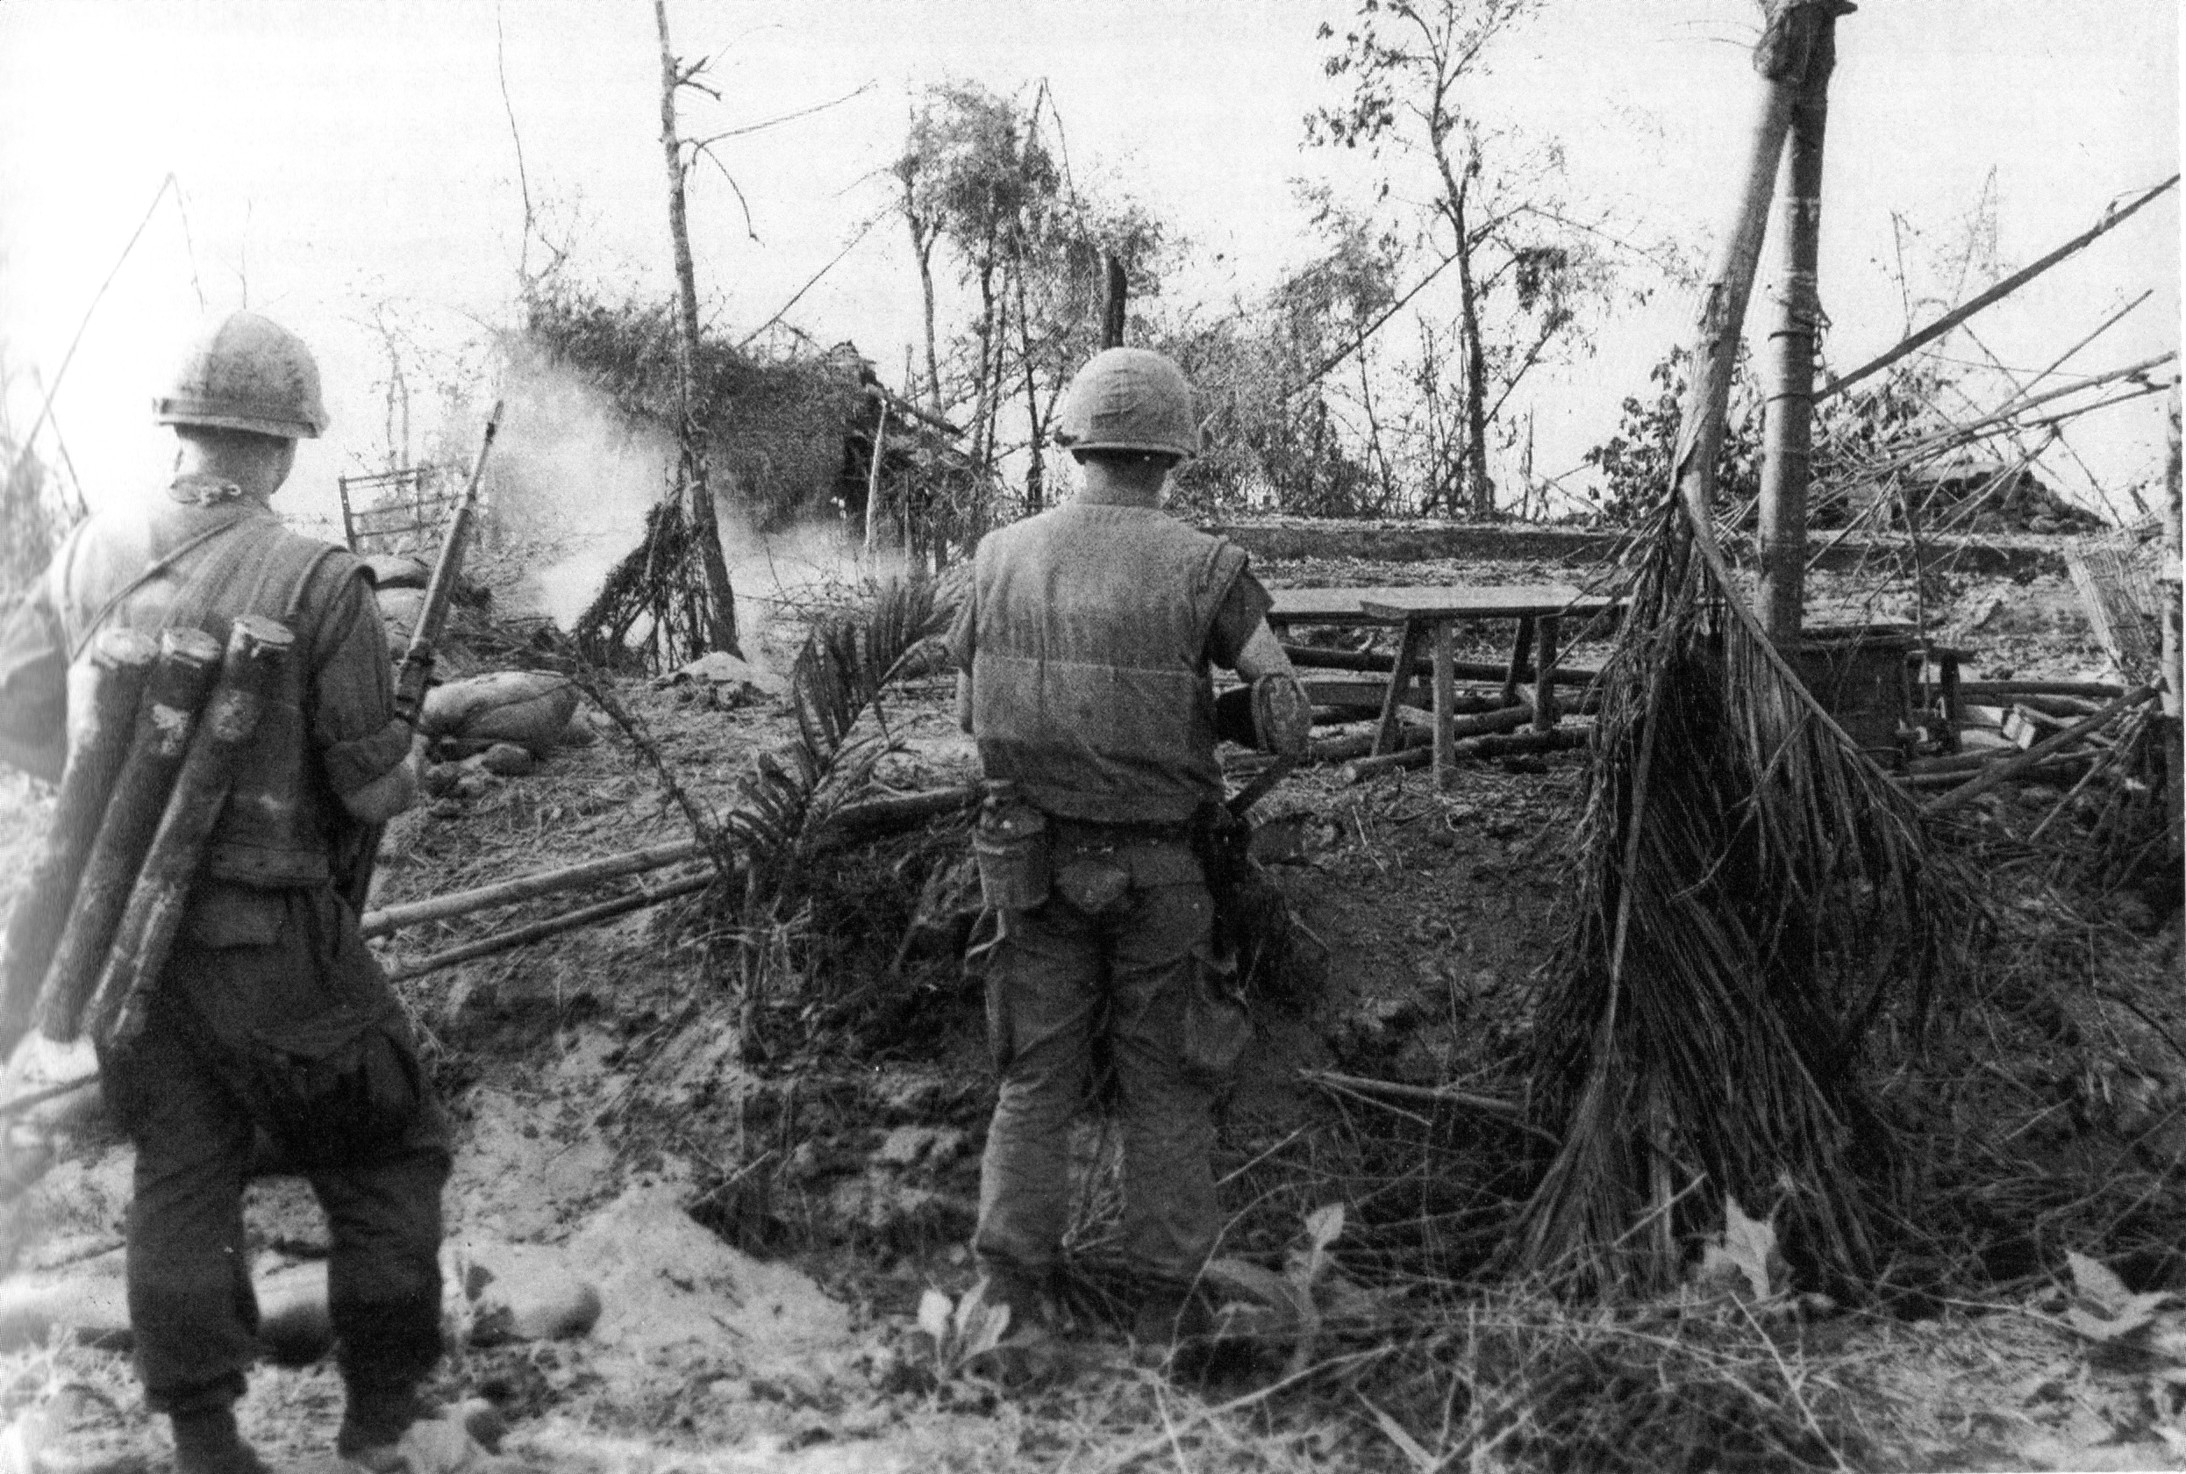 1968: Amerikanische Marinesoldaten während der Tet-Offensive (Foto: AP/Horst Faas)